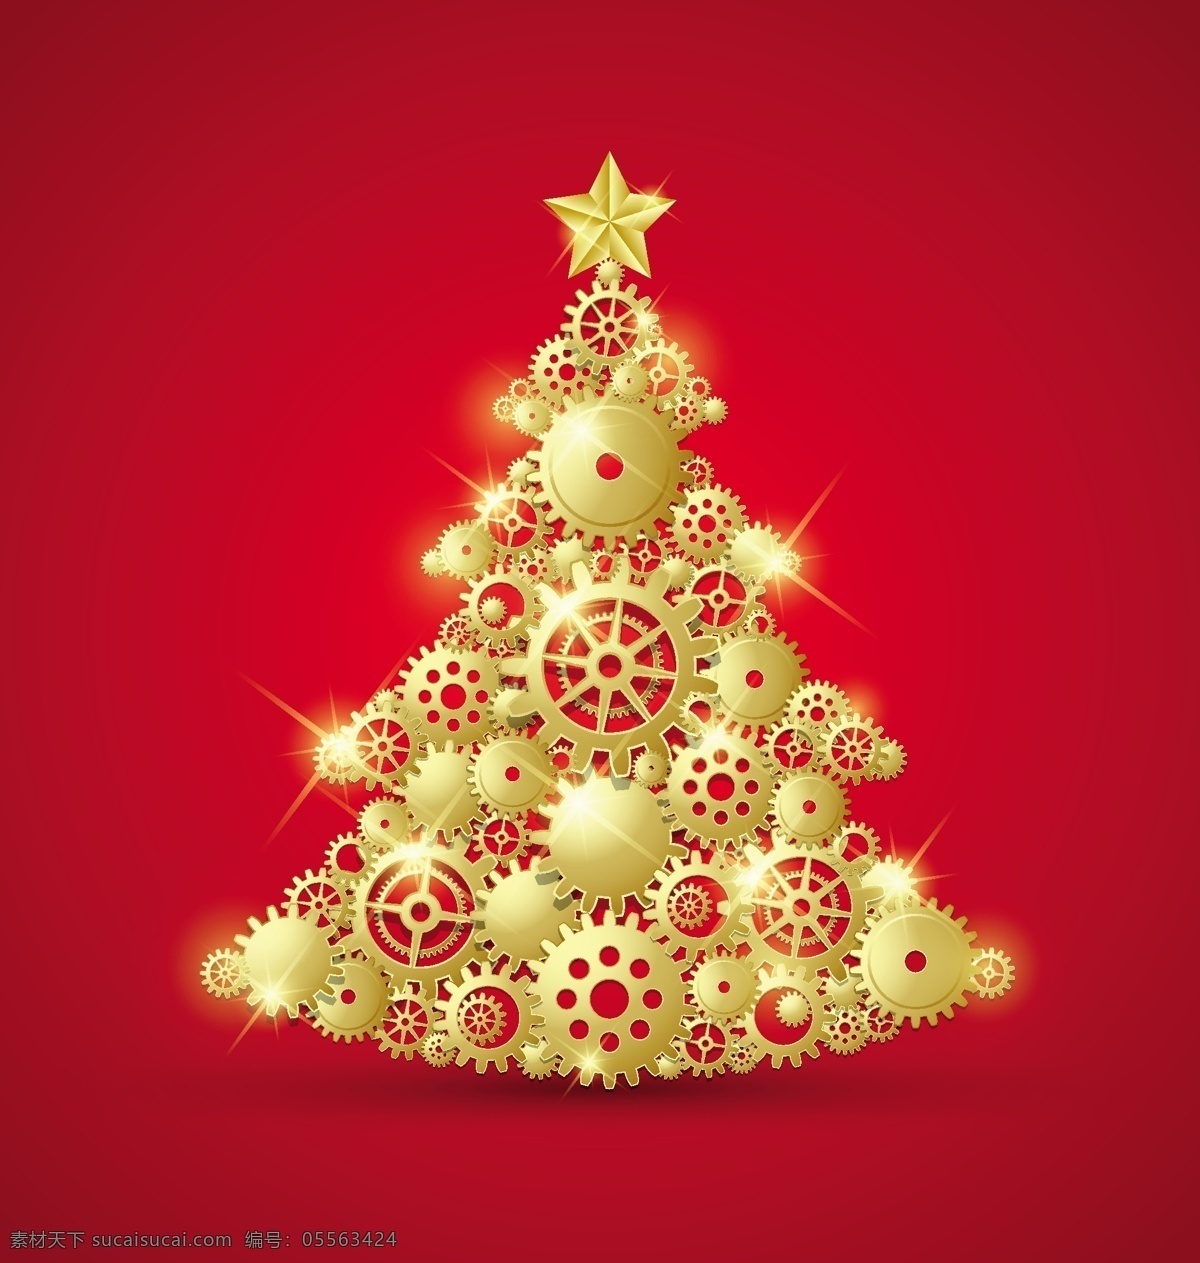 带 齿轮 金色 装饰 圣诞树 背景壁纸 庆典和聚会 圣诞节 节日和季节性 装饰装潢 模板和模型